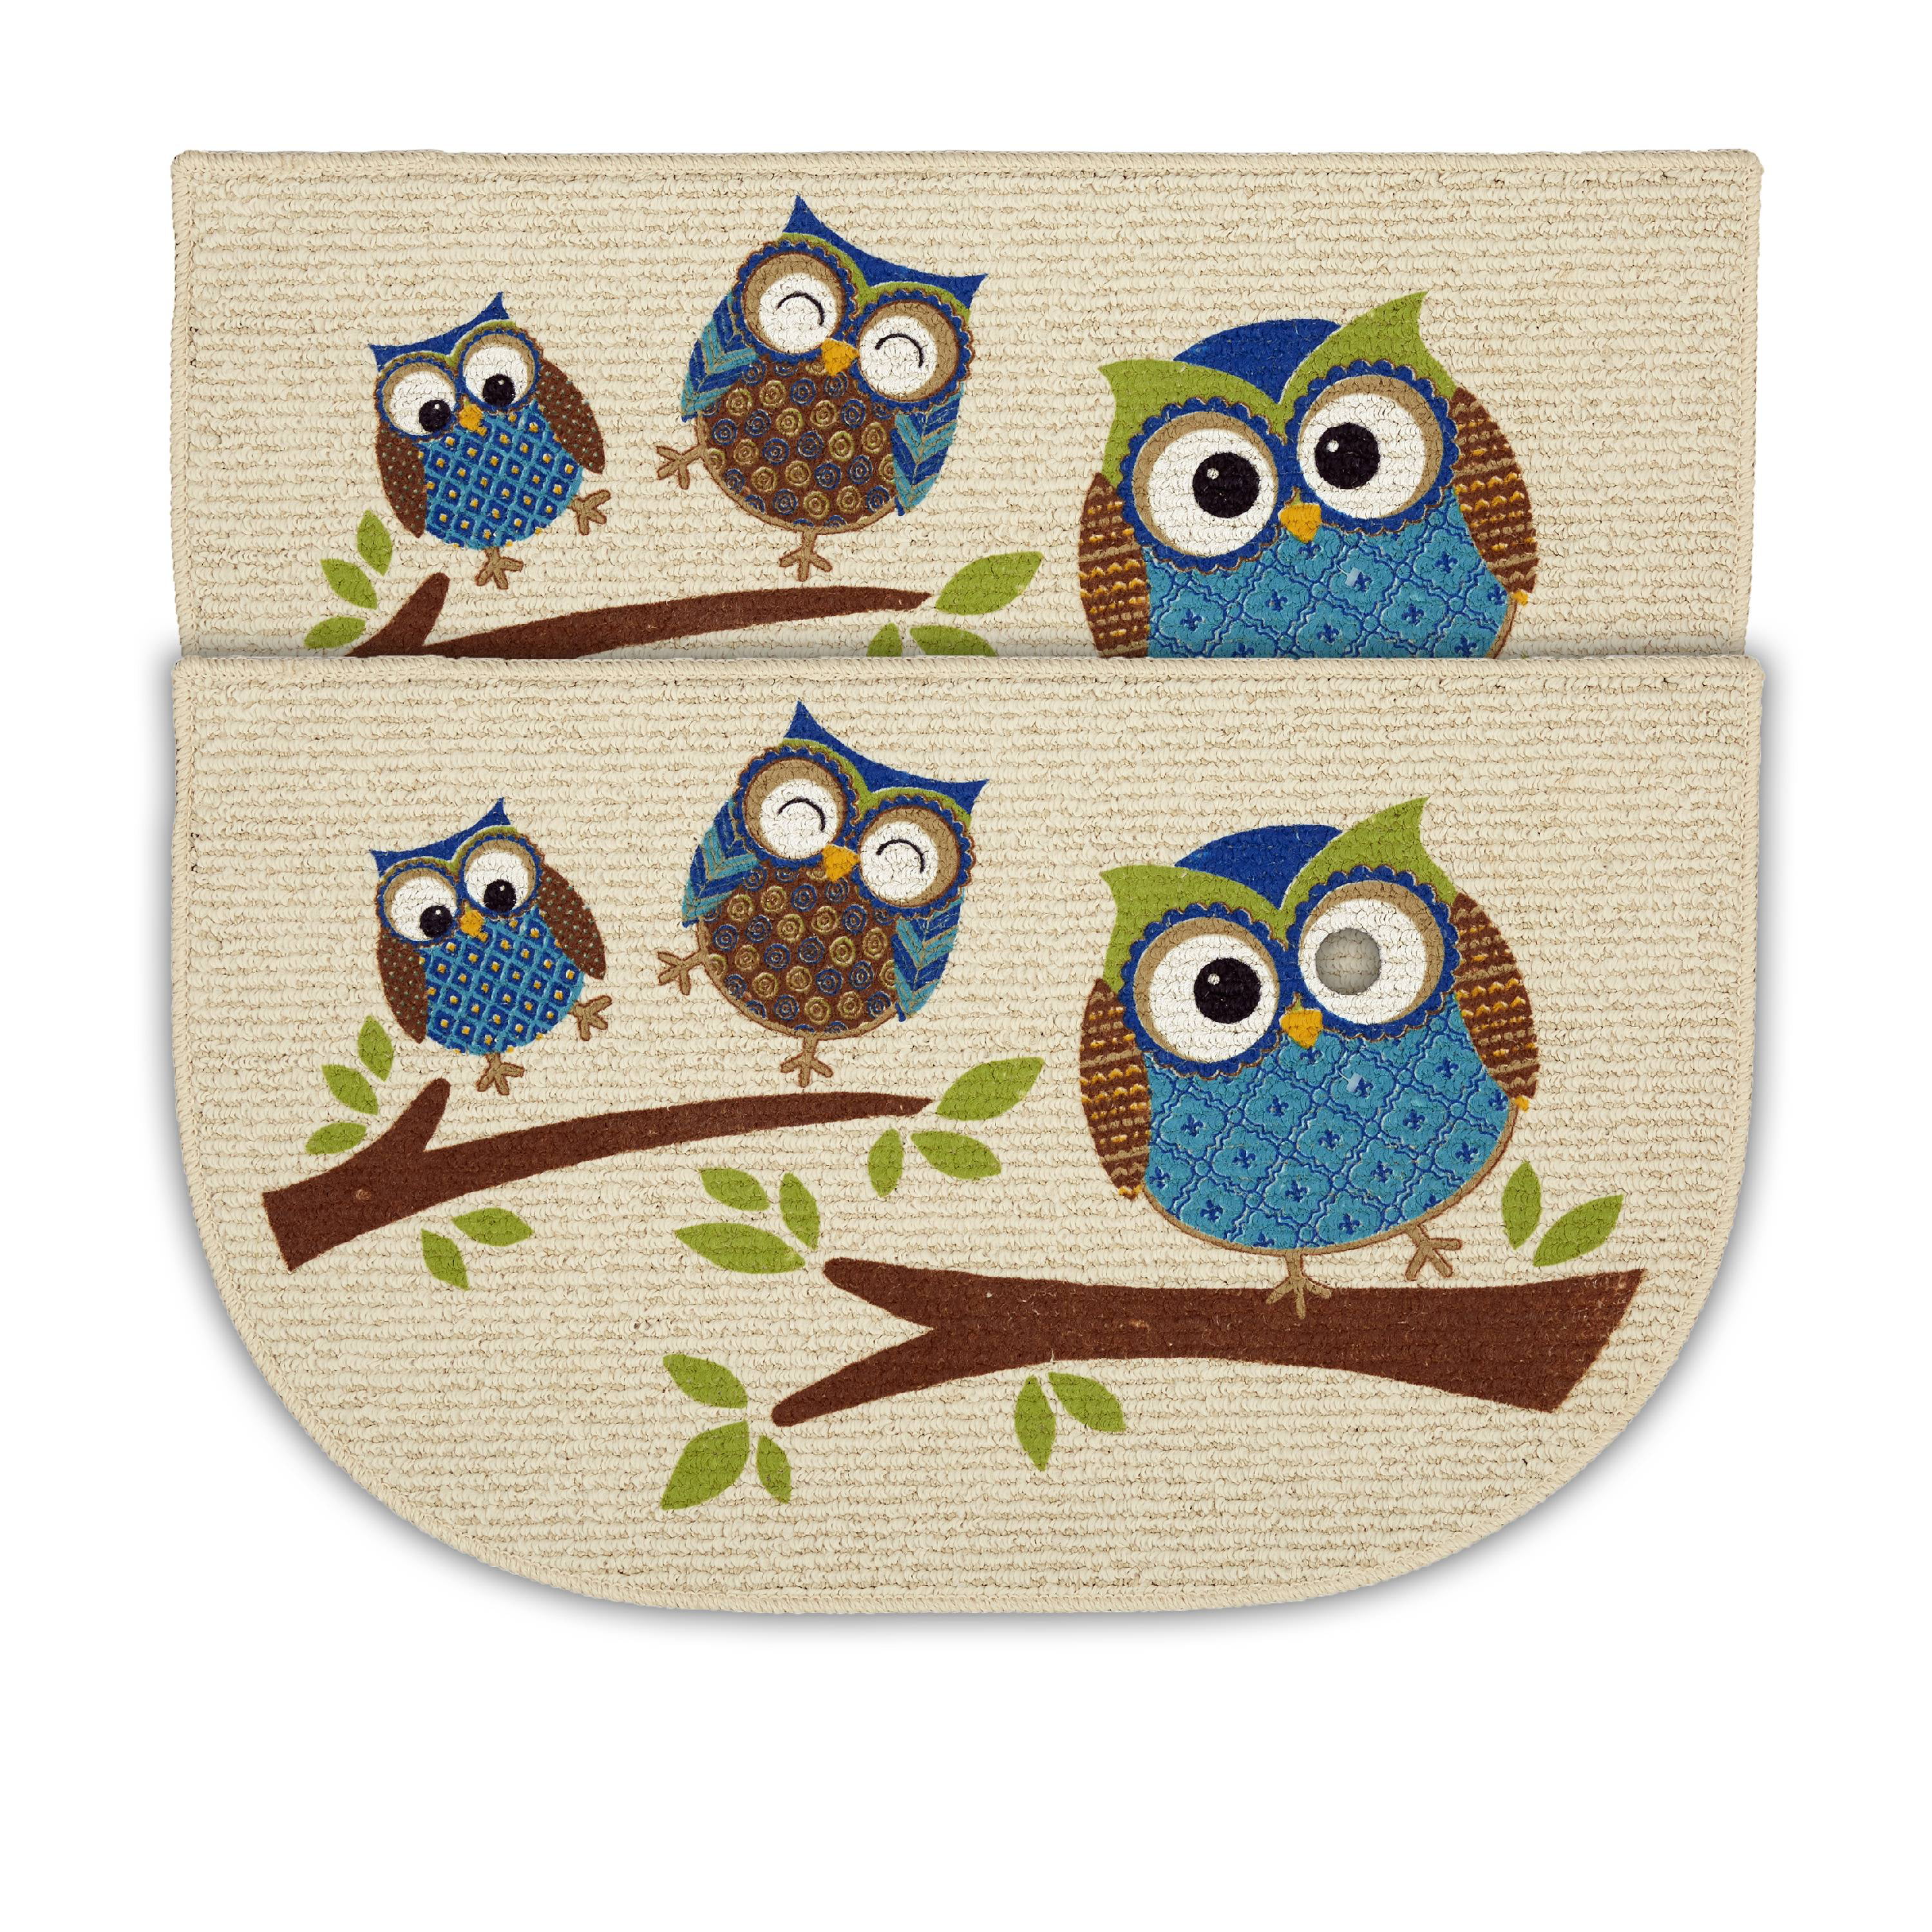 InterestPrint Cute Flat Owls Sitting on a Brunch with Berries 20 X 32 Absorbent Water Bath Mat Soft Plush Carpet